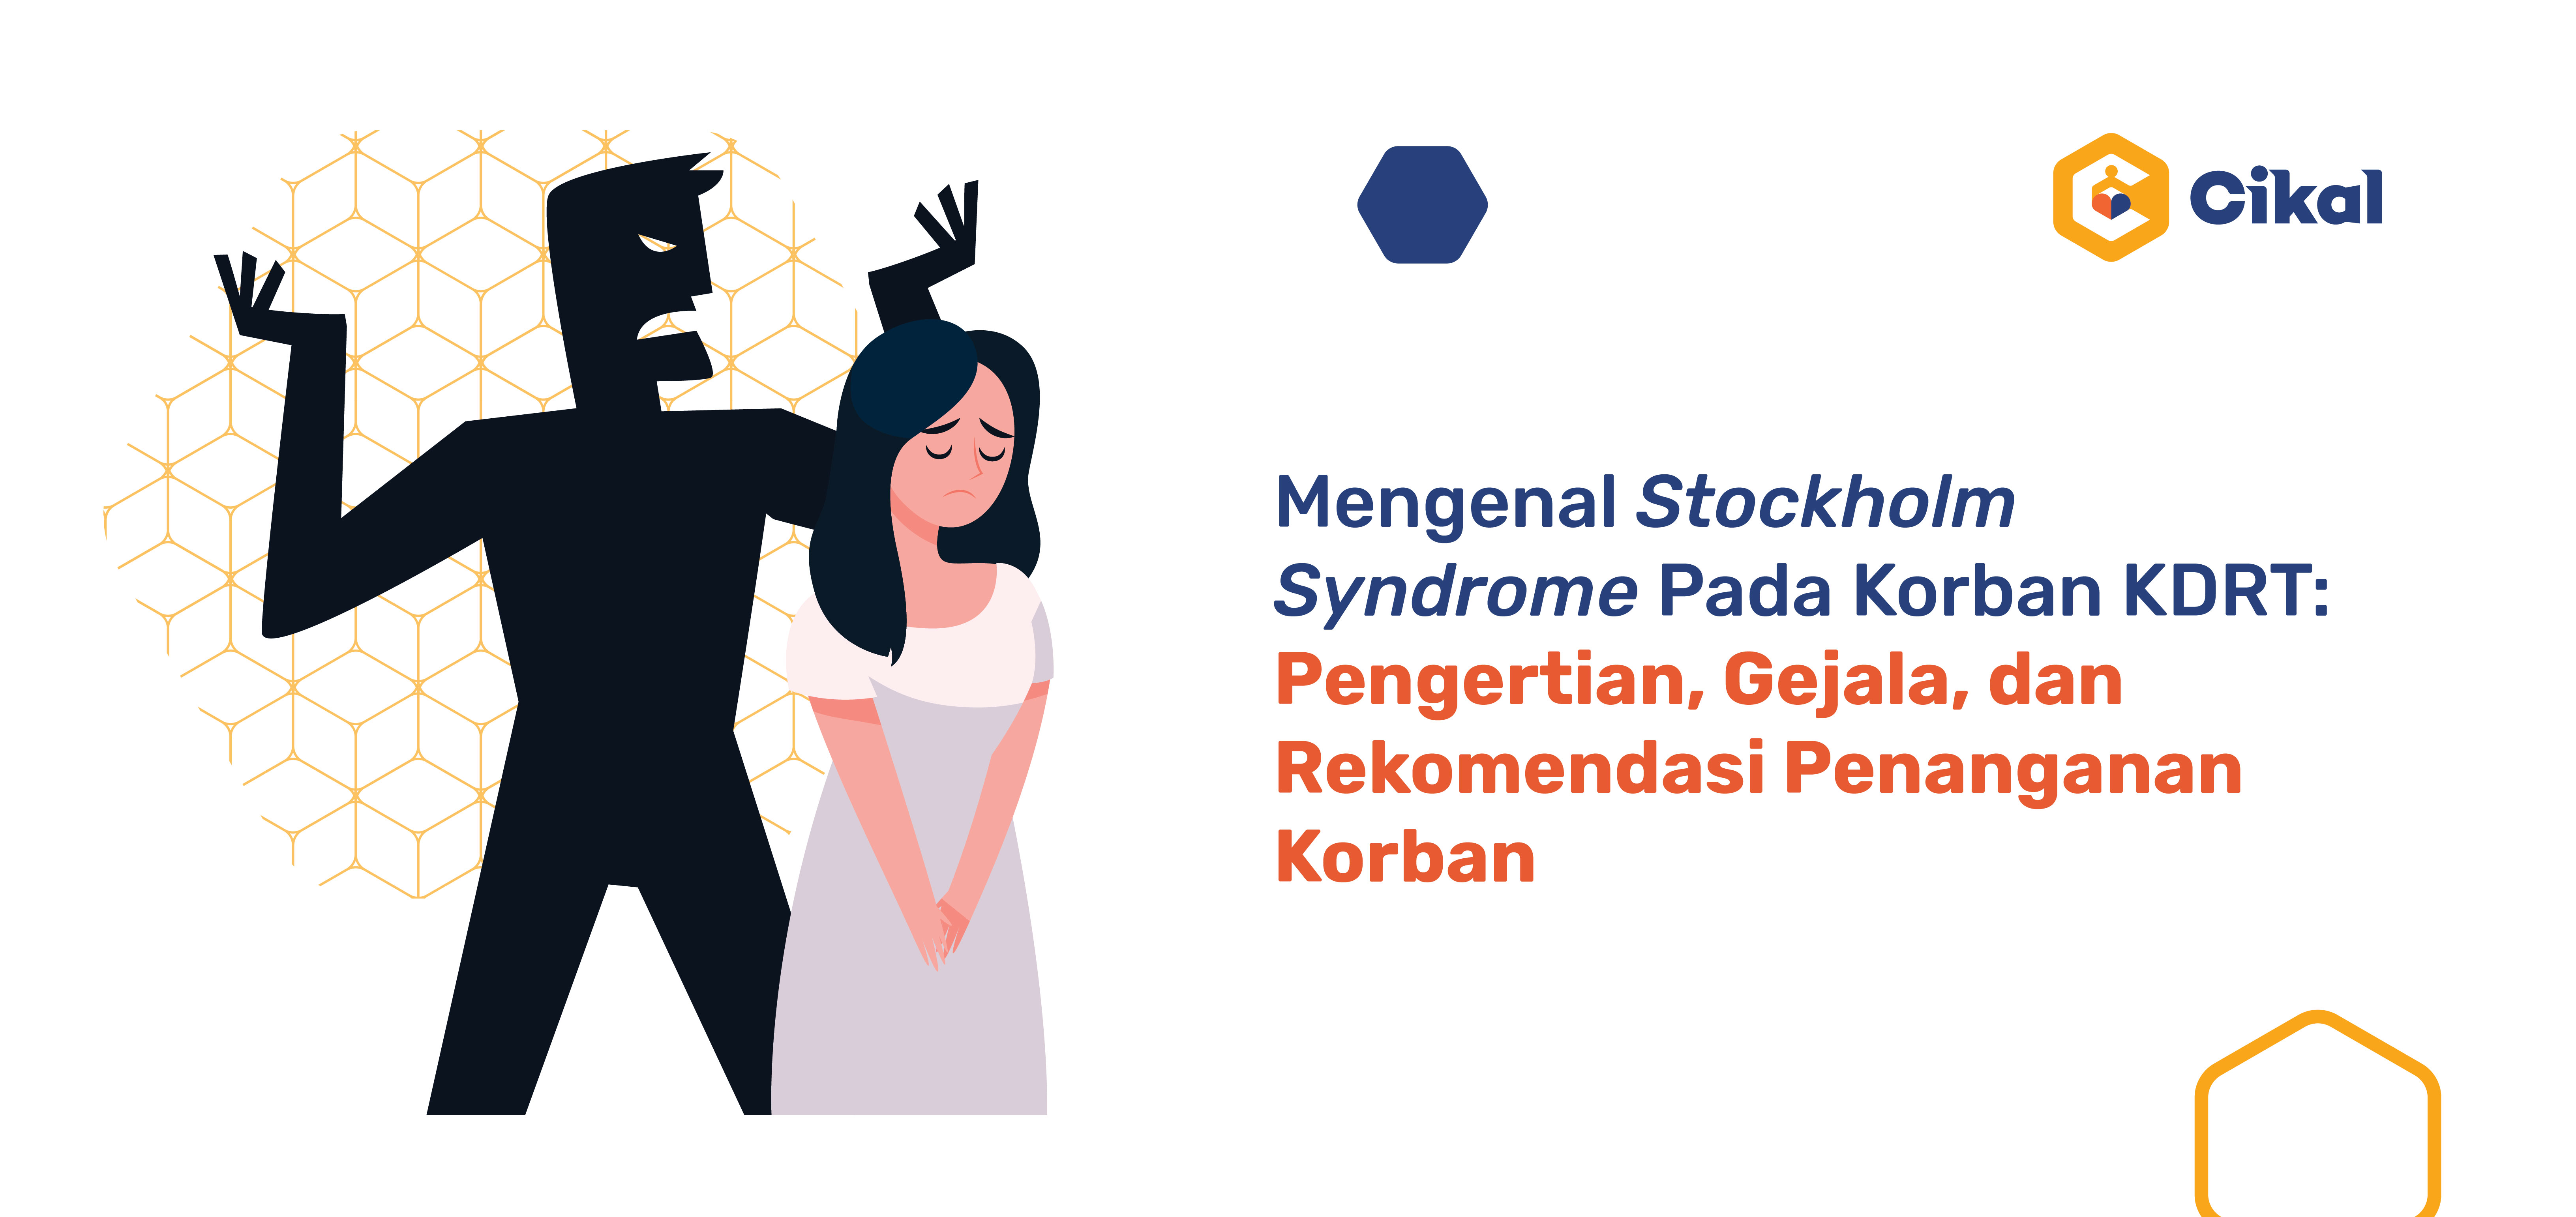 Mengenal Stockholm Syndrome Pada Korban KDRT: Pengertian, Gejala, dan Rekomendasi Penanganan Korban 